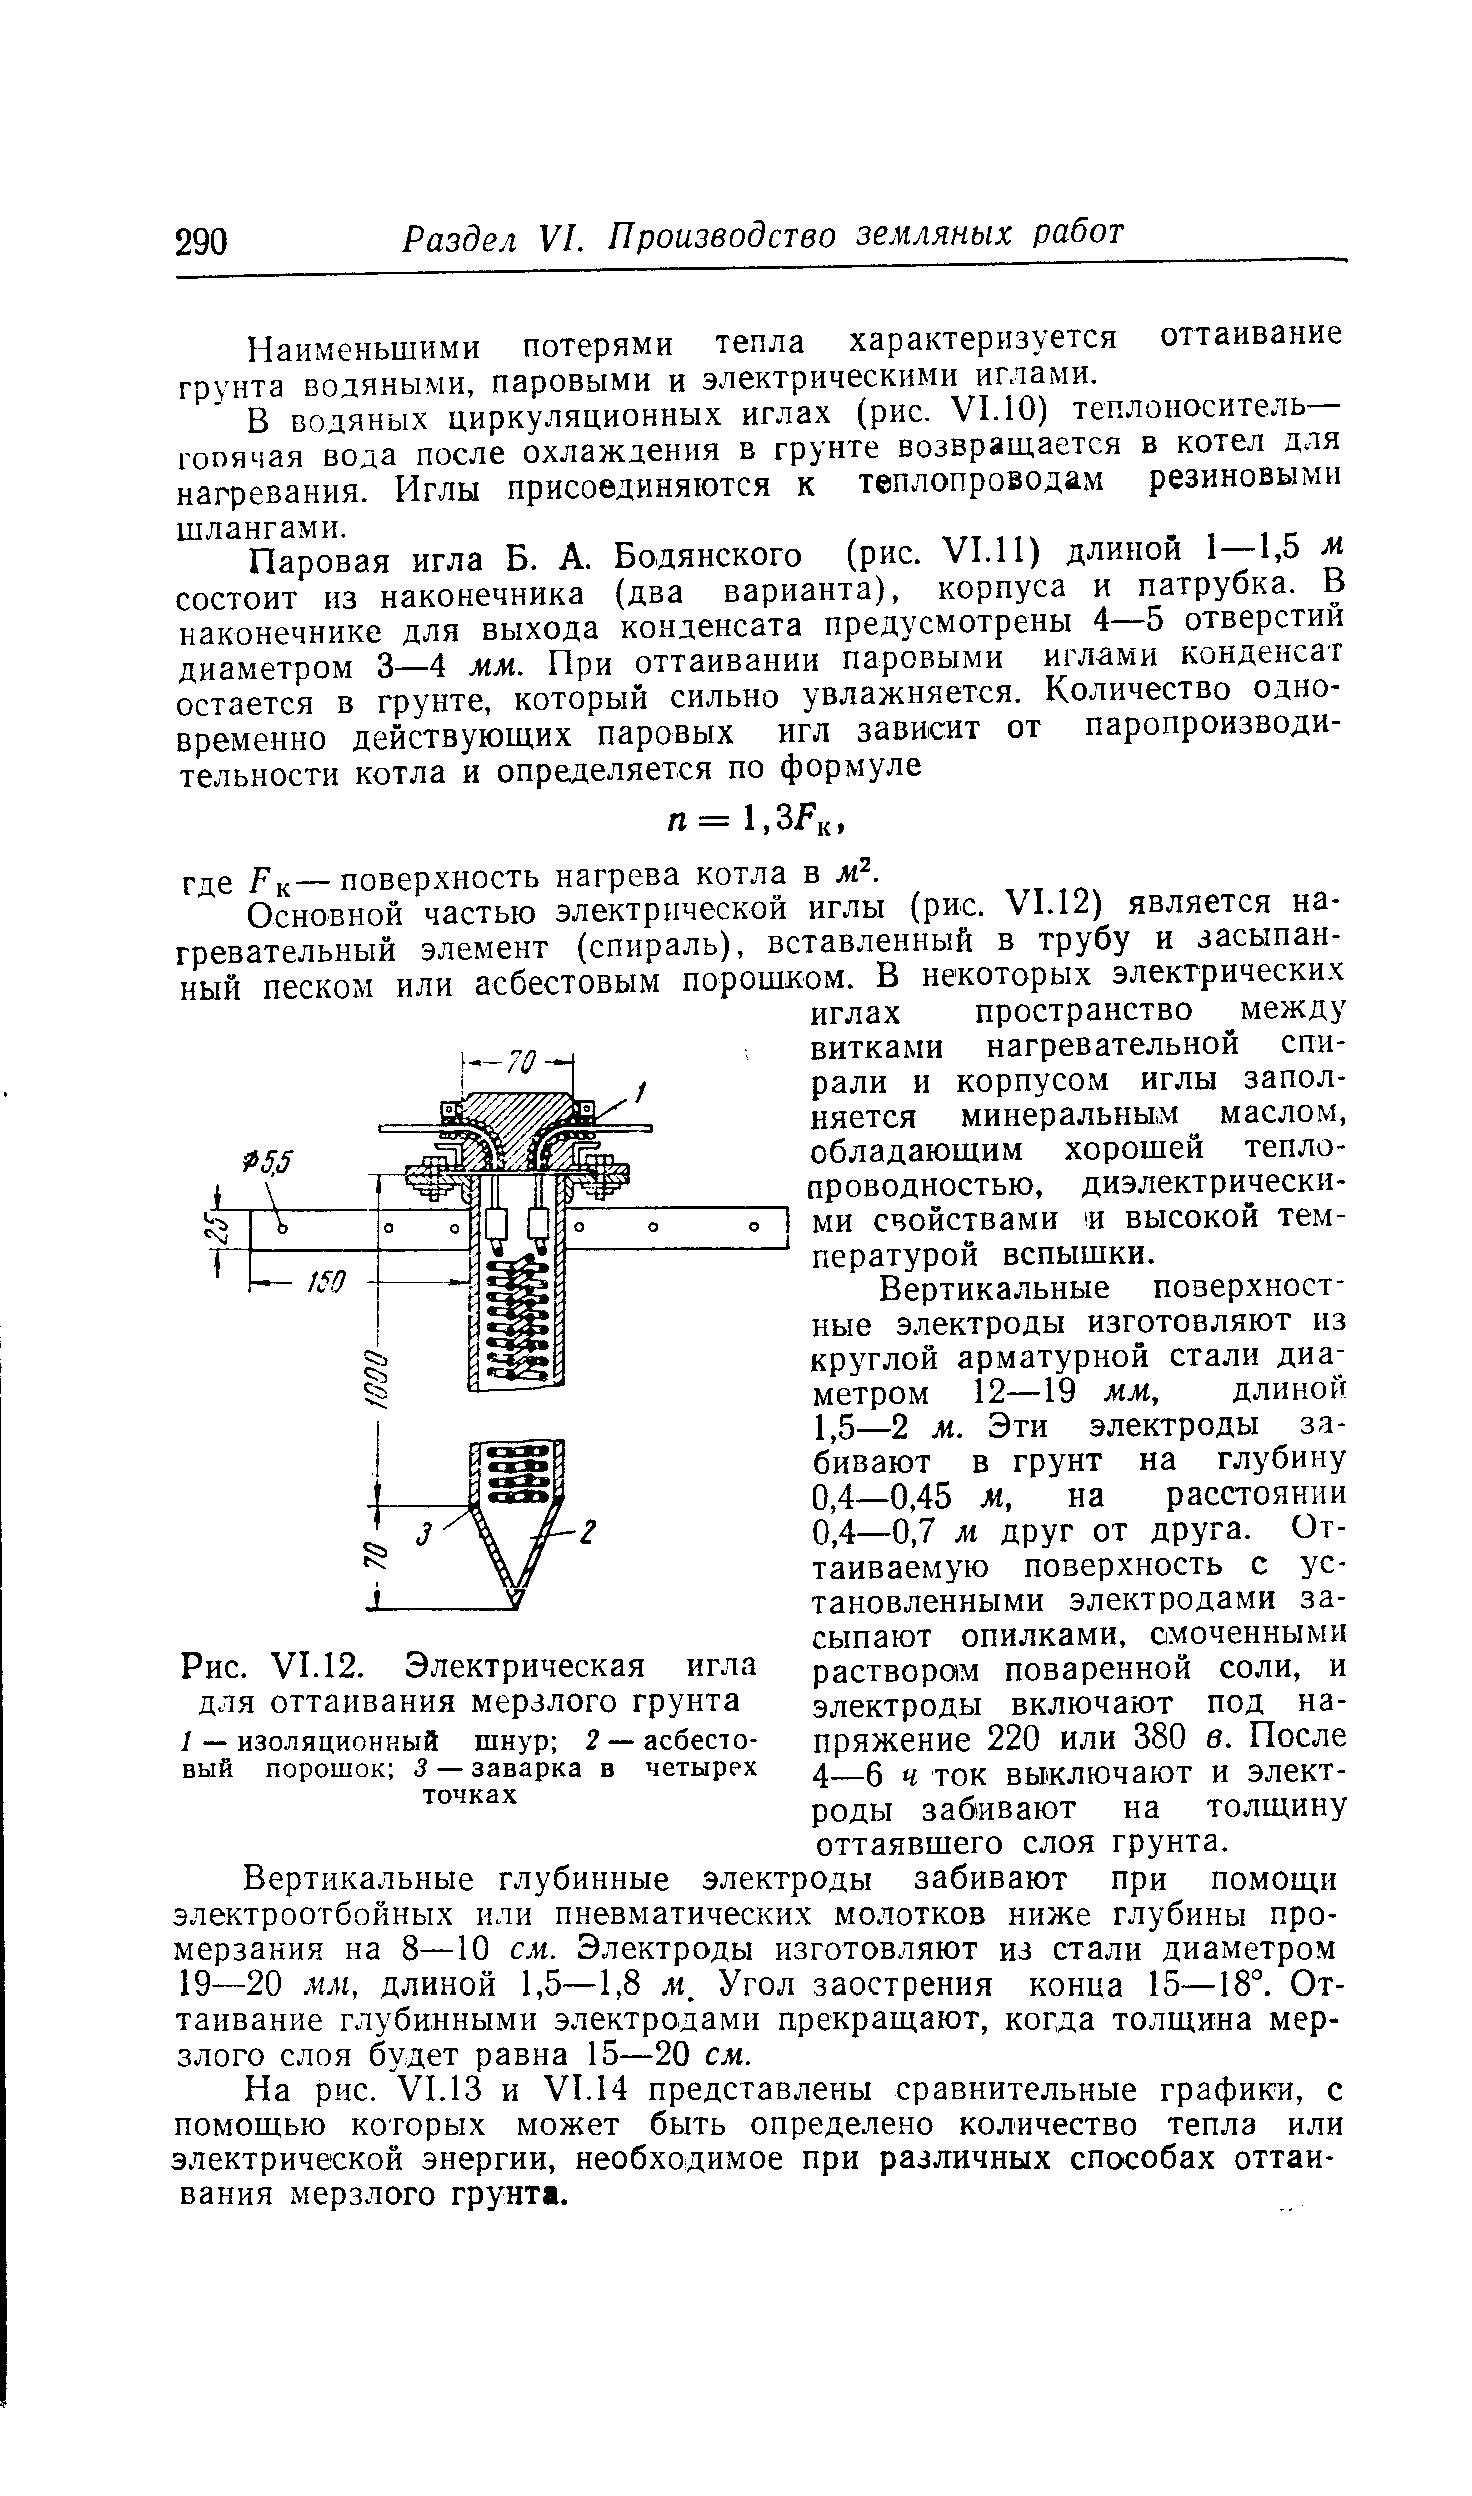 Рис. VI. 12. Электрическая игла для оттаивания мерзлого грунта
